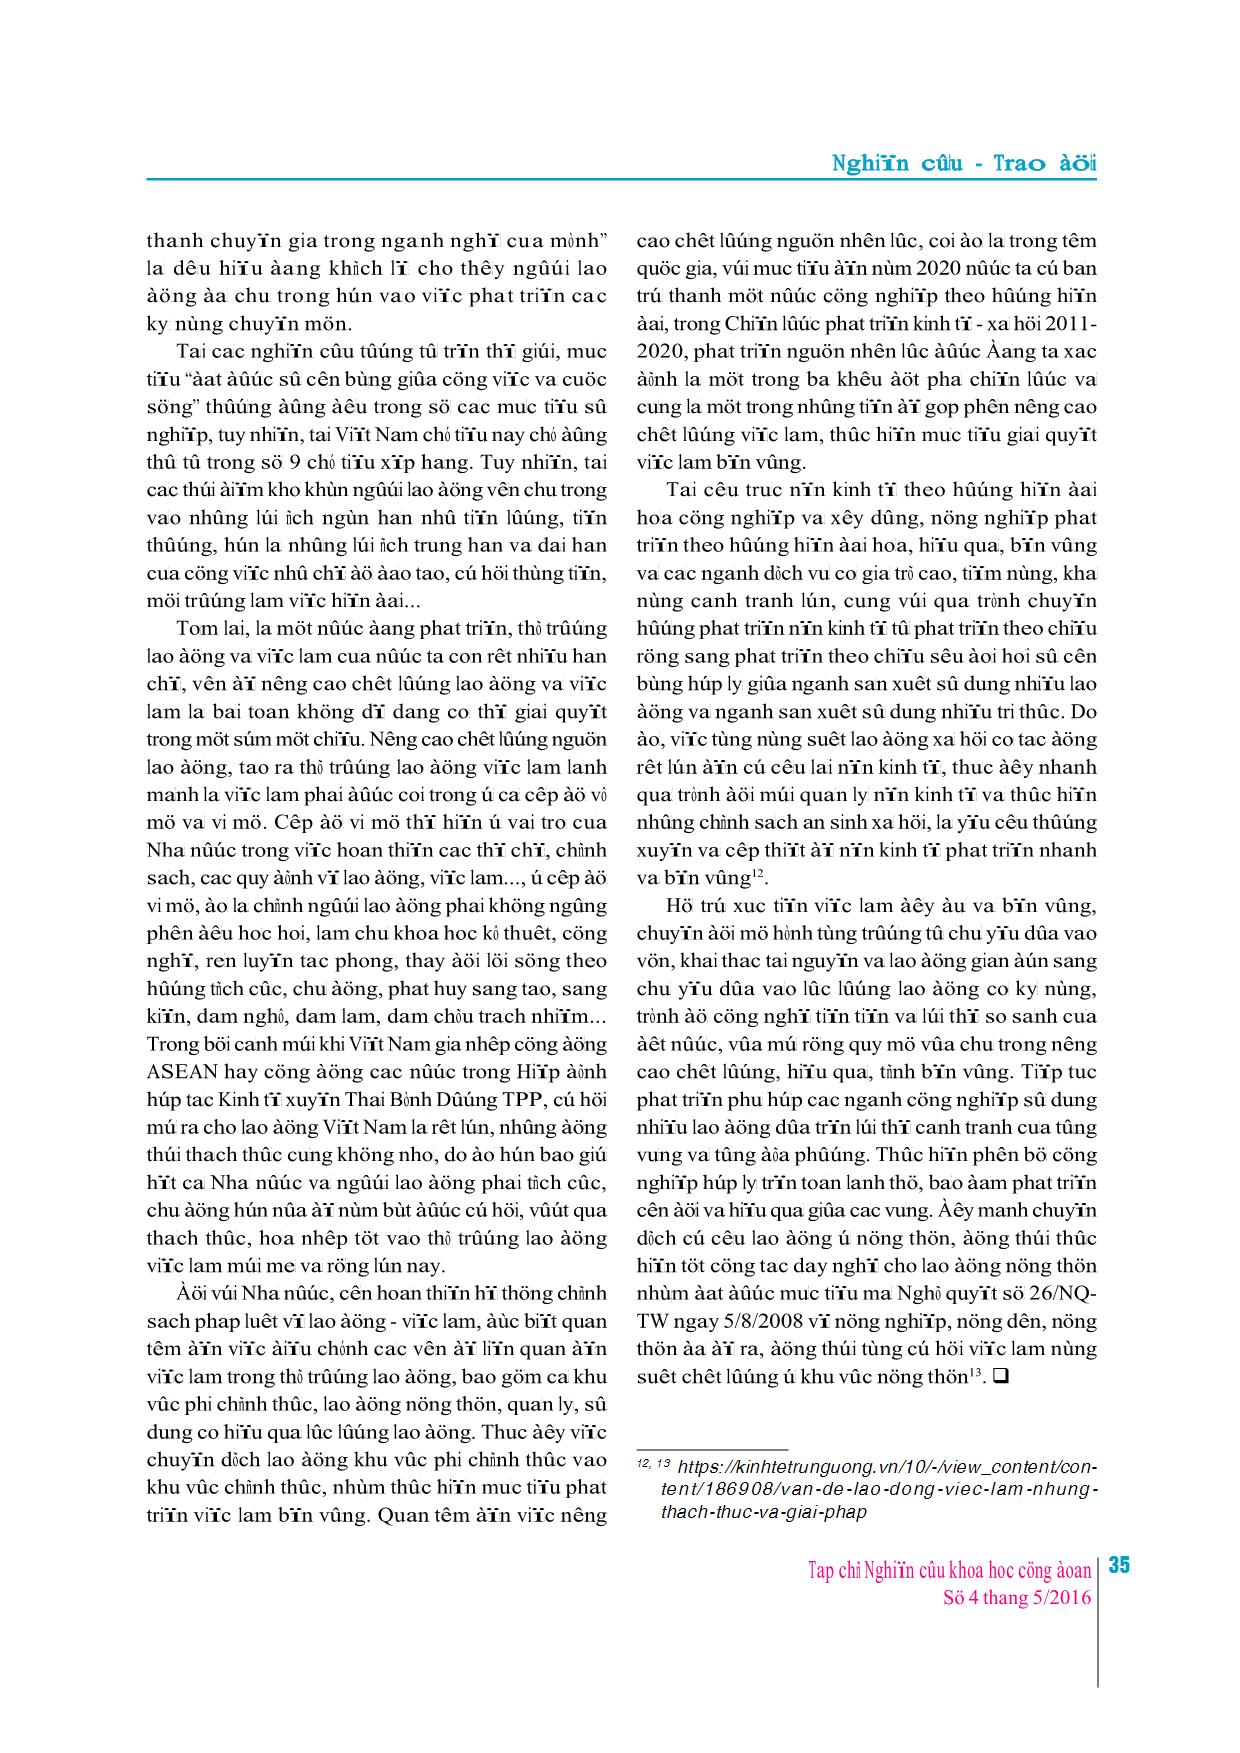 Những hạn chế về lao động, việc làm của Việt Nam hiện nay trang 5